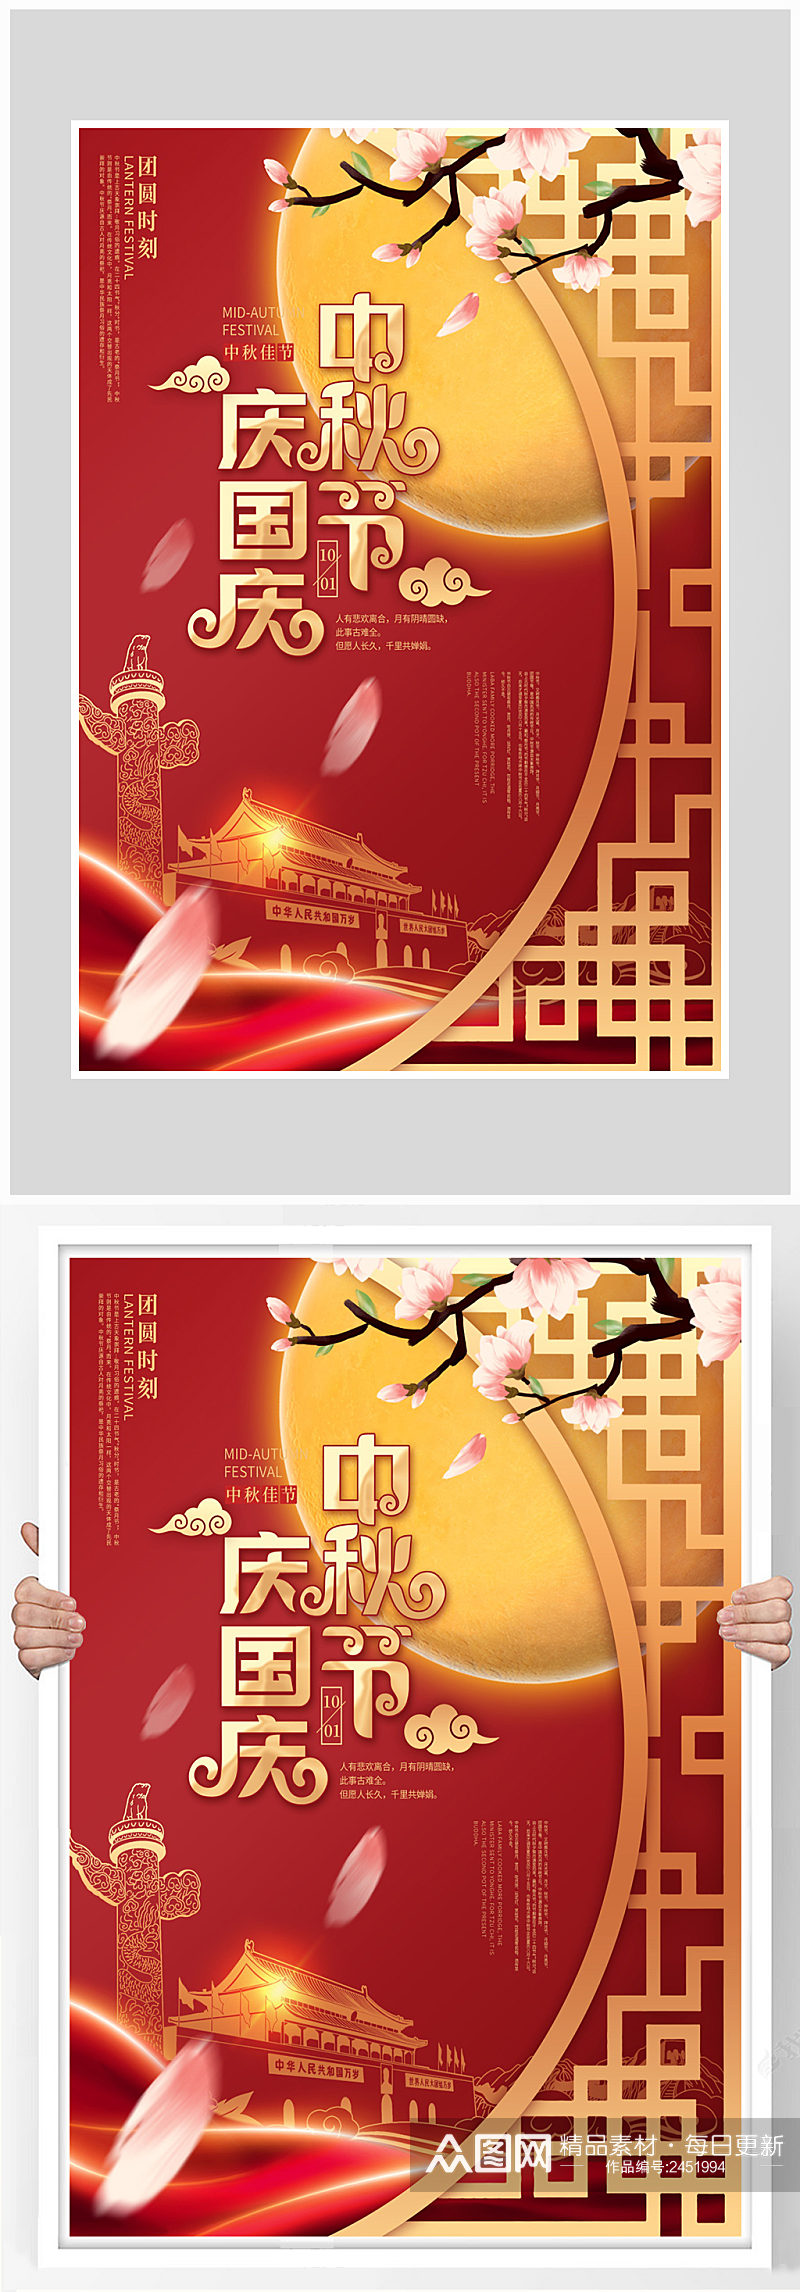 红色喜庆国庆节海报设计素材